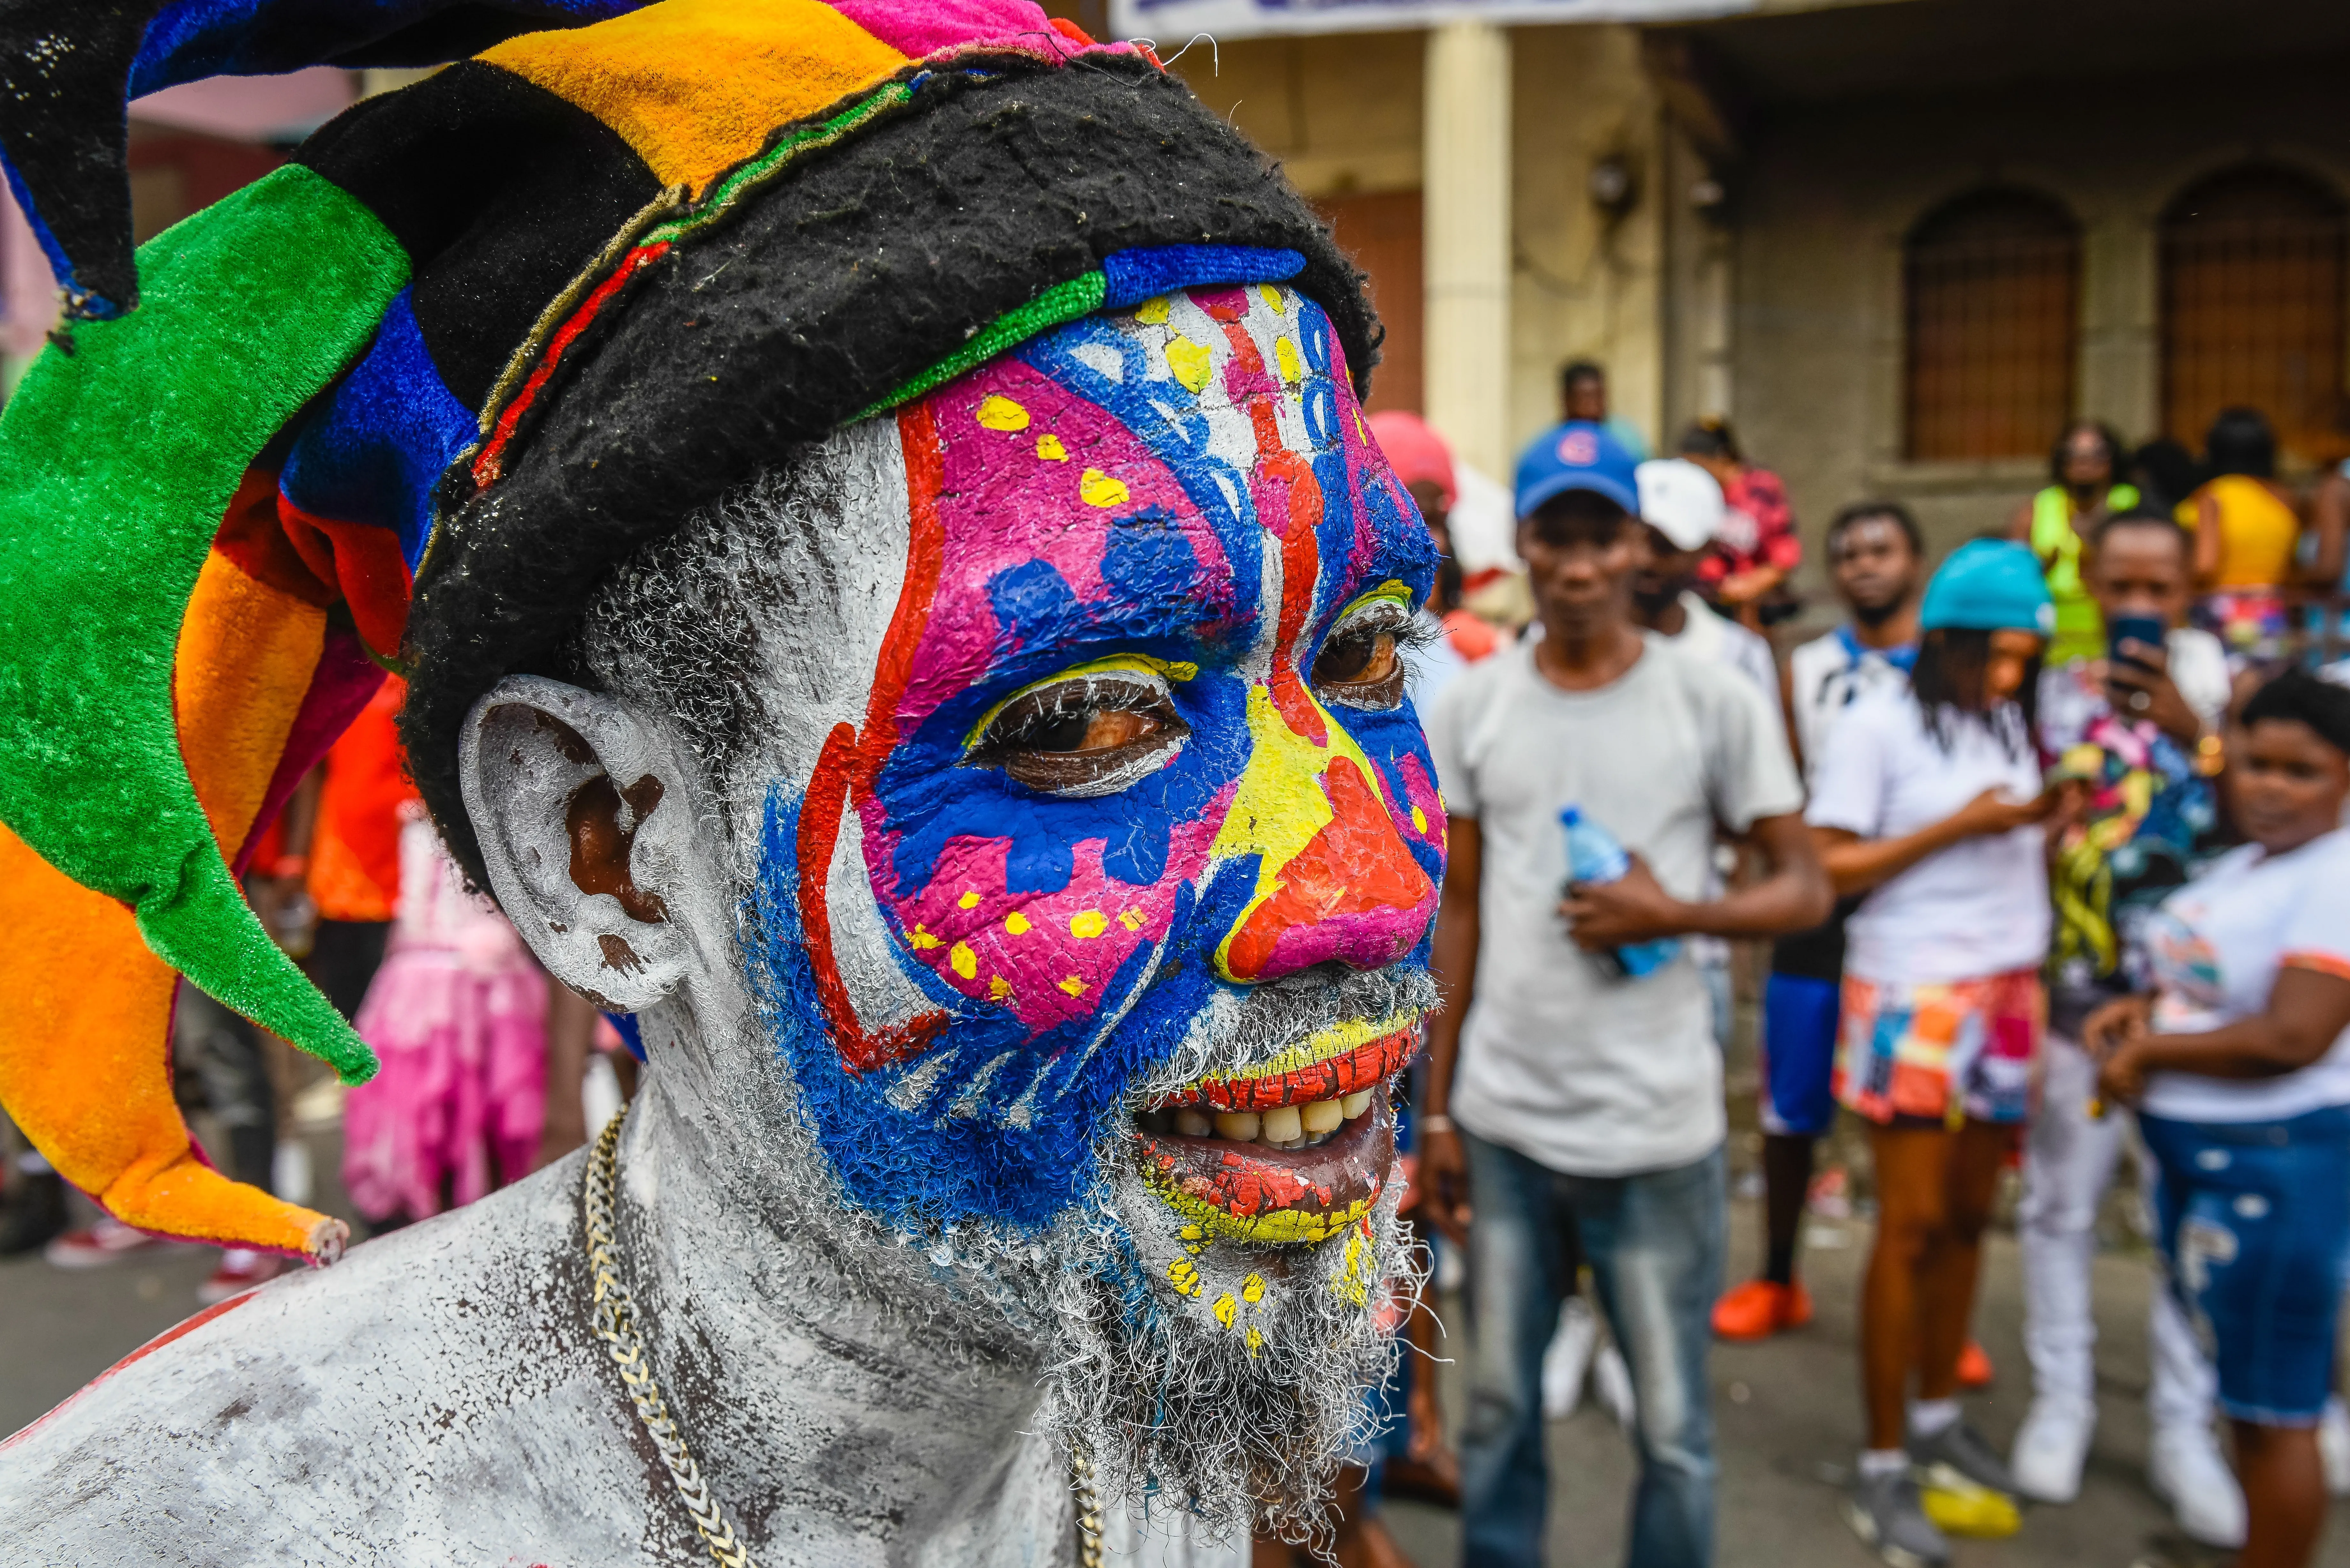 Haitianos bailan en las calles en carnaval pese a crisis